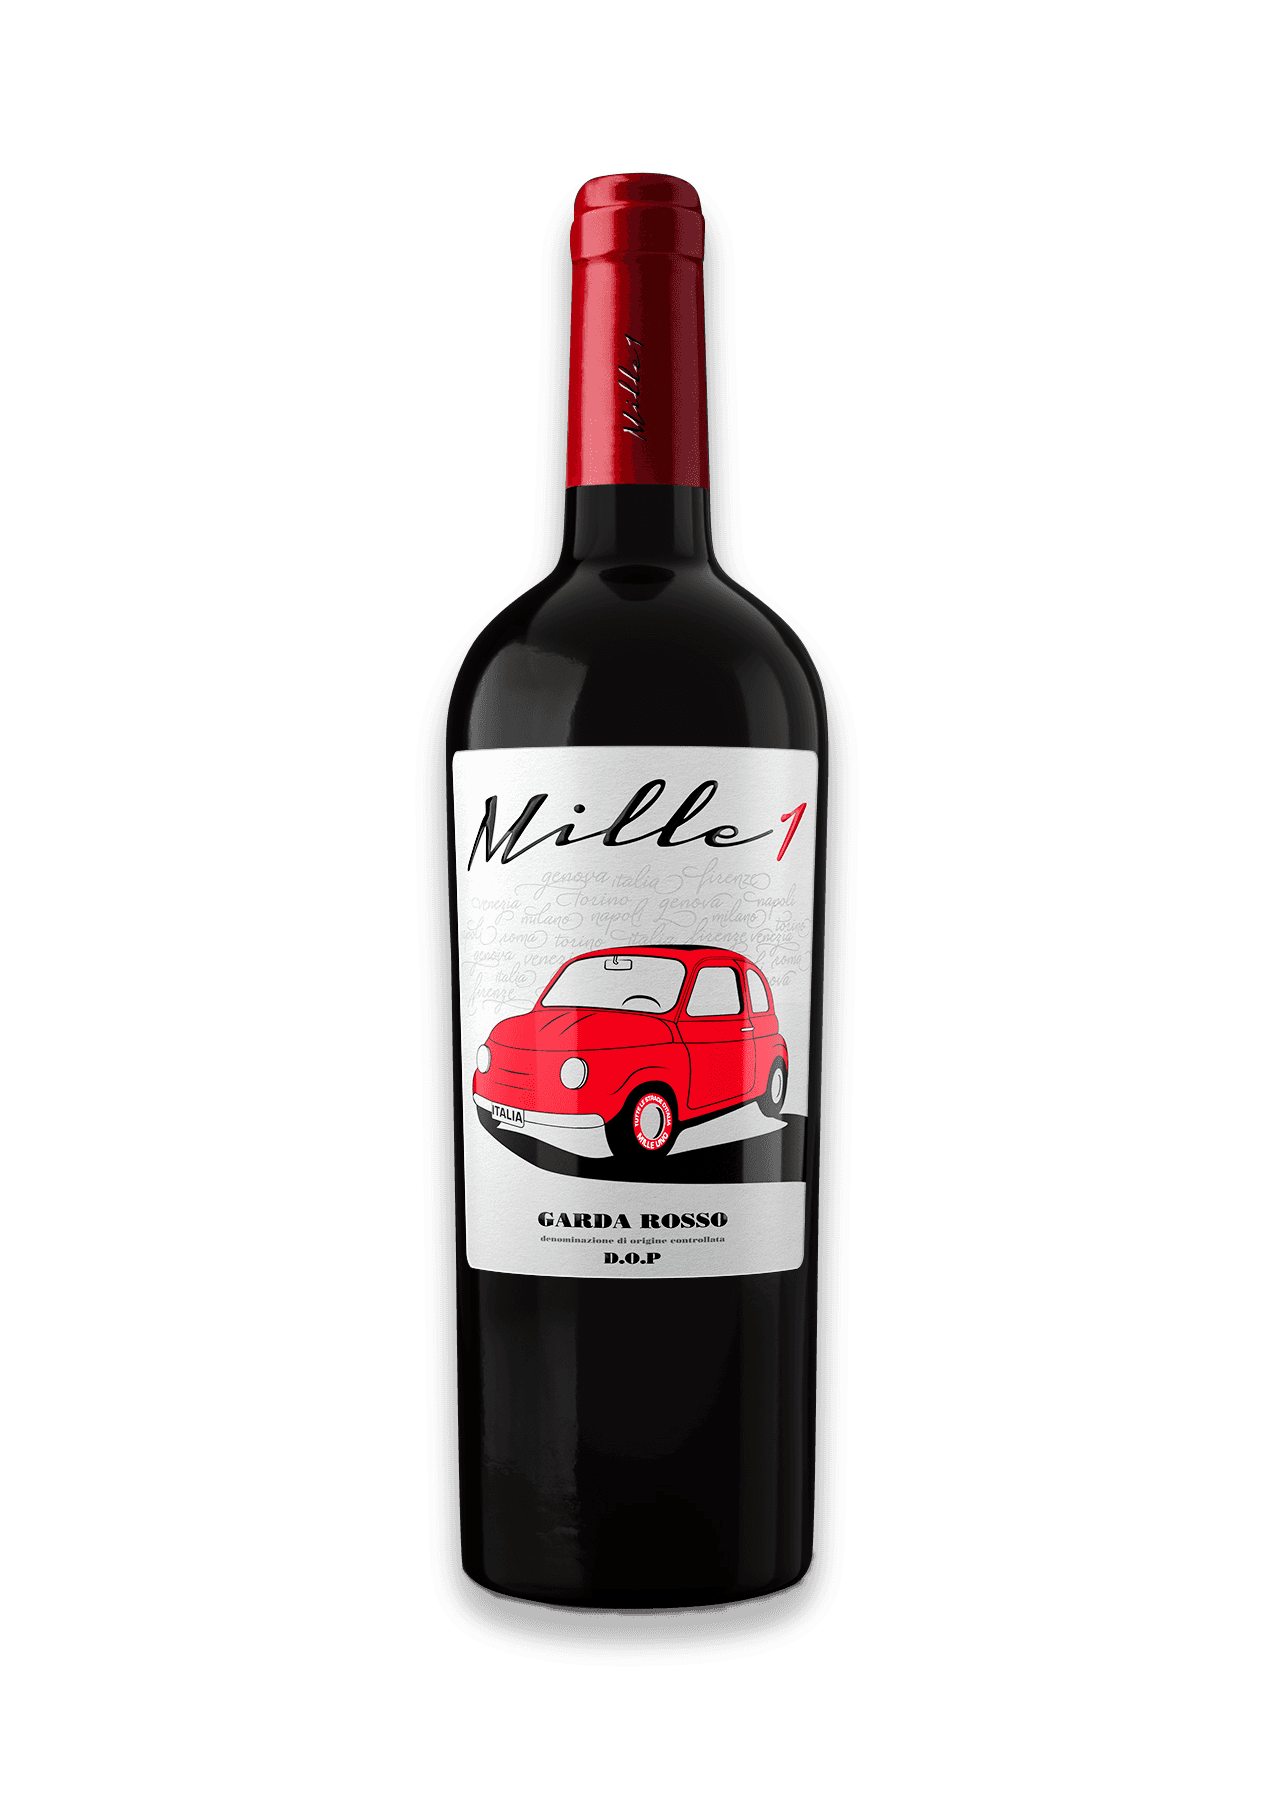 Mille1 Italian red wine bottle